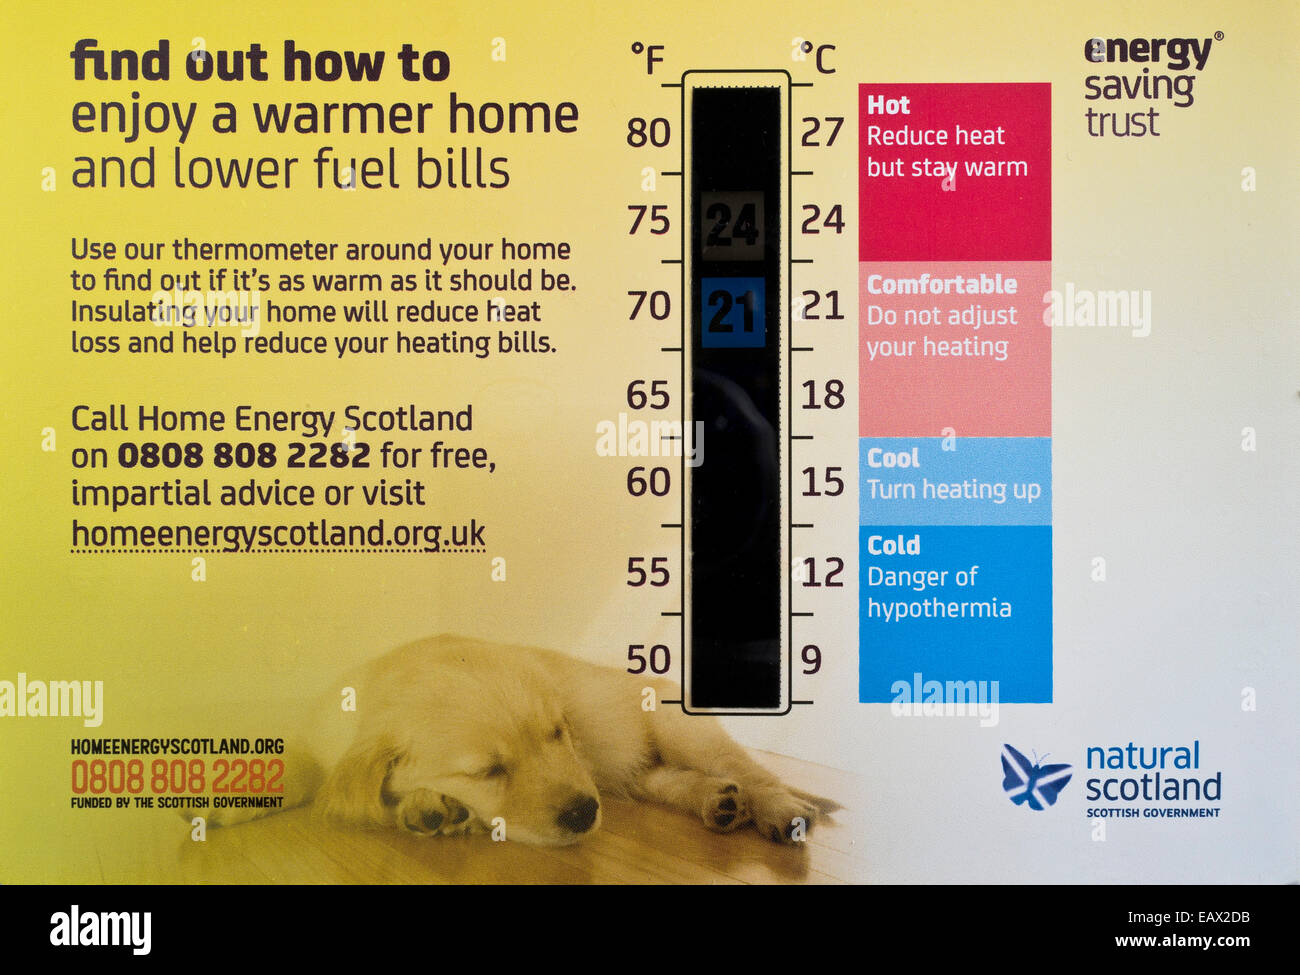 Dh Energy Saving Trust britannique d'économie d'énergie à la maison en Écosse maison chaleur guide thermomètre numérique Banque D'Images